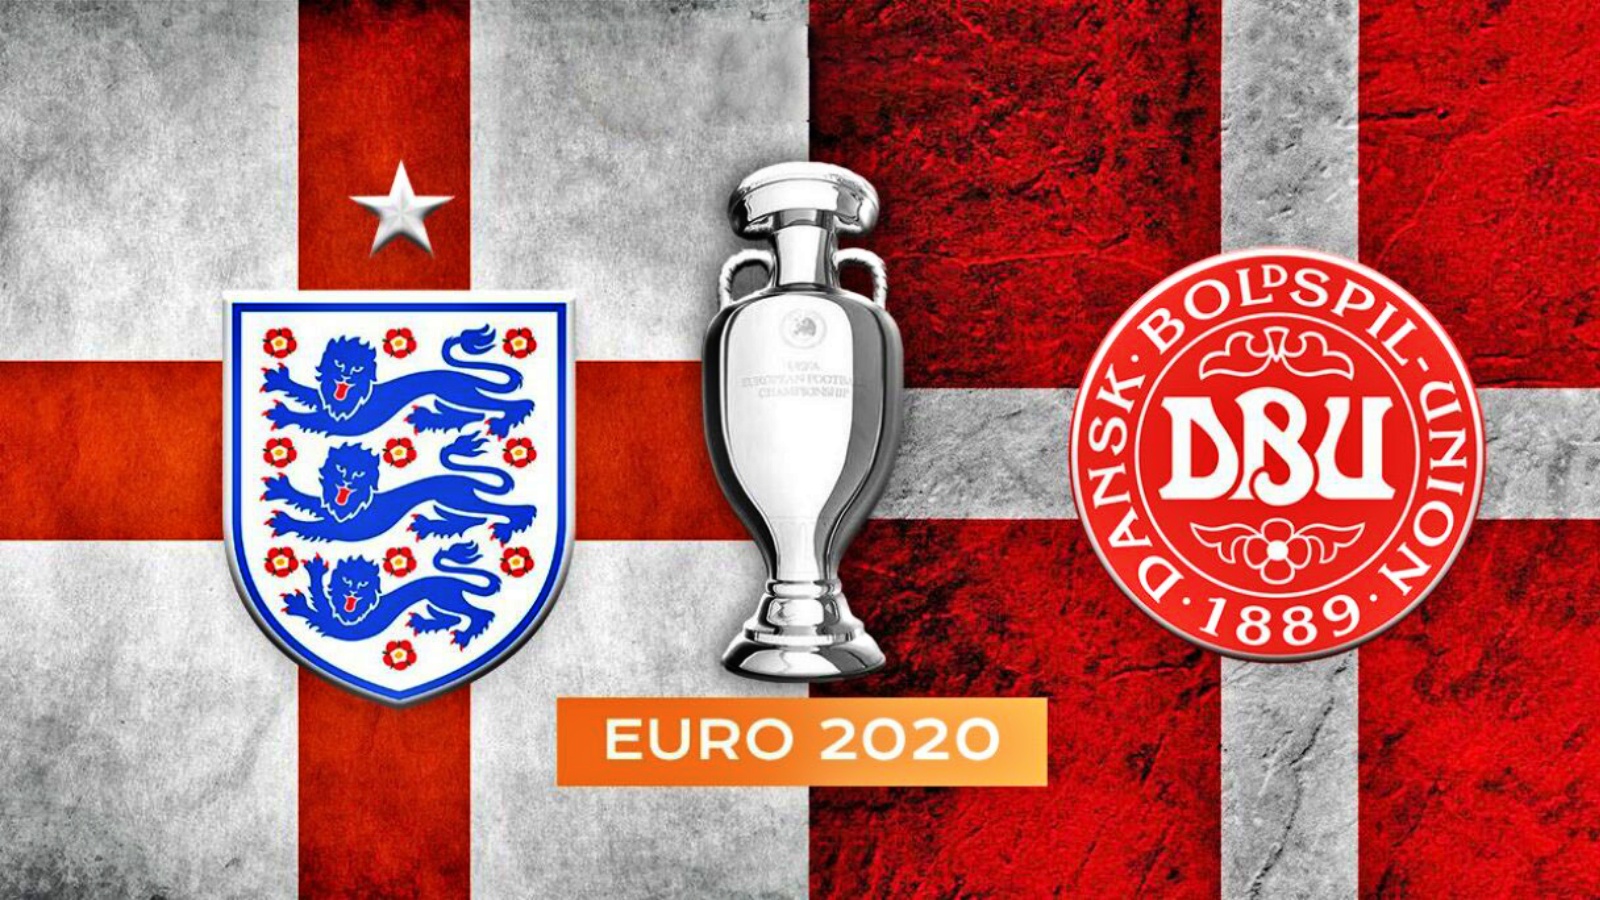 ENGELAND - DENEMARKEN LIVE PRO TV EURO 2020